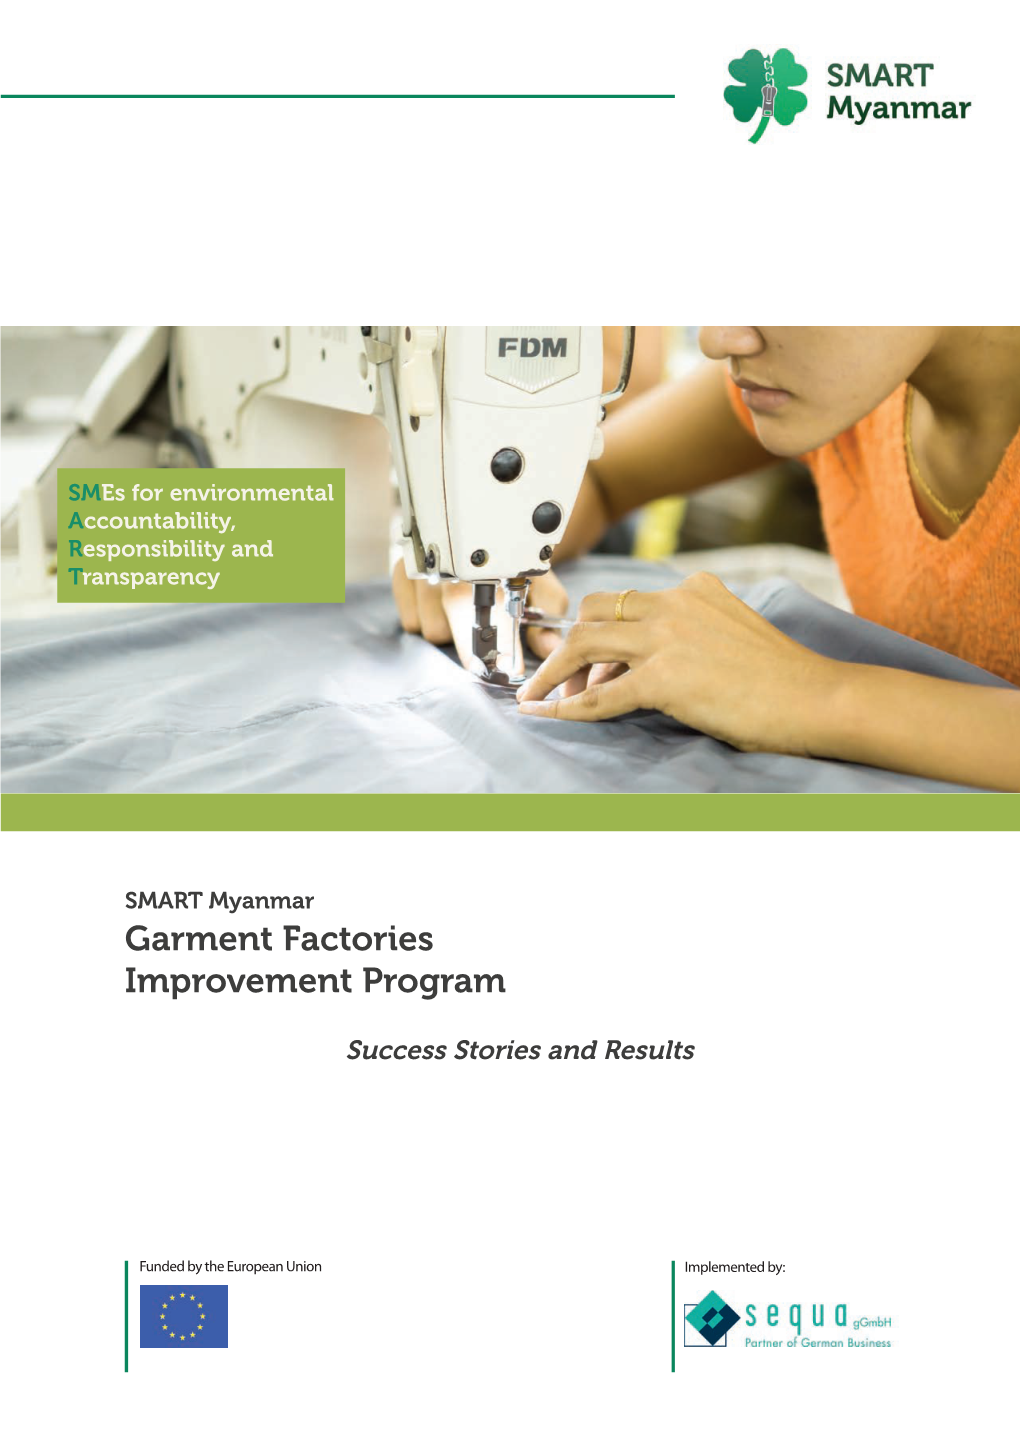 SMART Myanmar Garment Factories Improvement Program